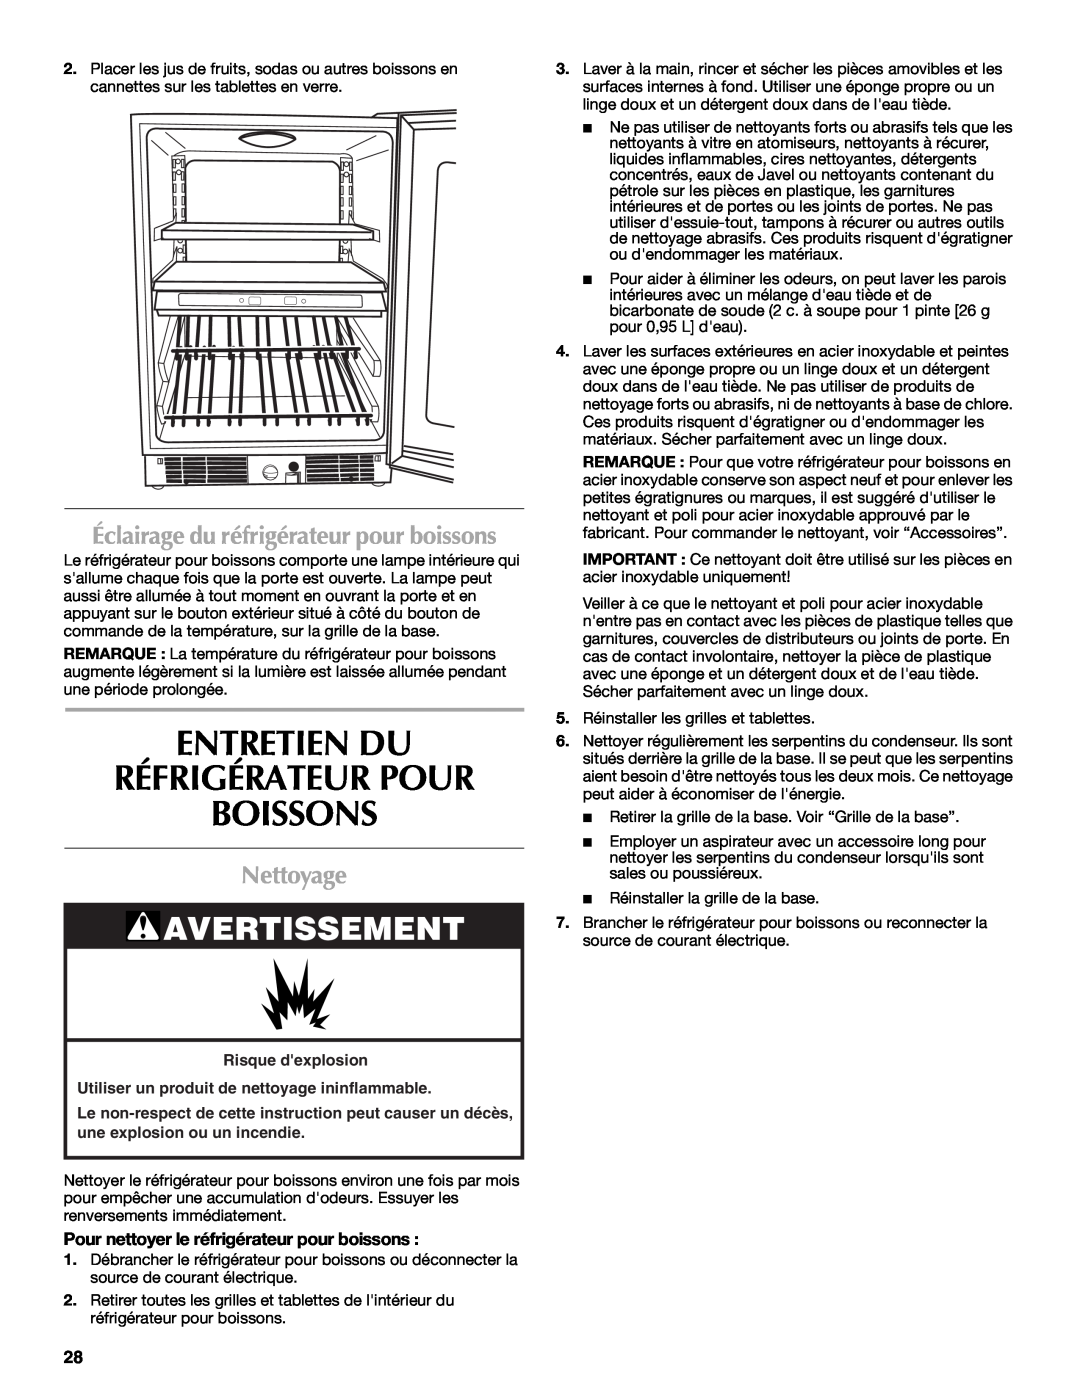 Maytag W10285880A - 8336411962010 Entretien Du Réfrigérateur Pour Boissons, Nettoyage, Avertissement, Risque dexplosion 